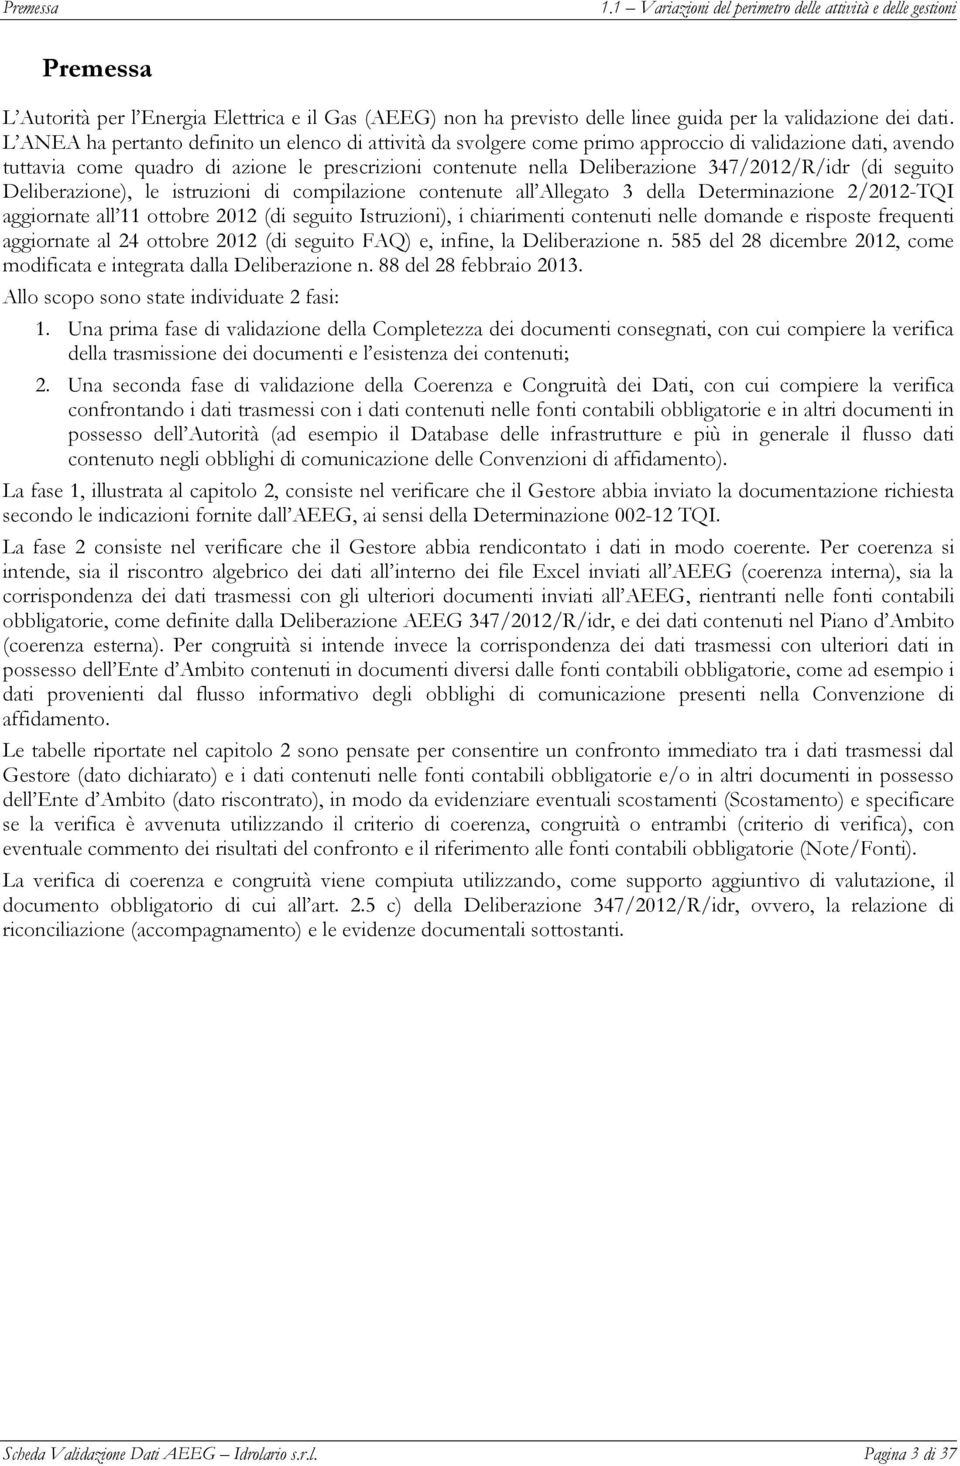 347/2012/R/idr (di seguito Deliberazione), le istruzioni di compilazione contenute all Allegato 3 della Determinazione 2/2012-TQI aggiornate all 11 ottobre 2012 (di seguito Istruzioni), i chiarimenti